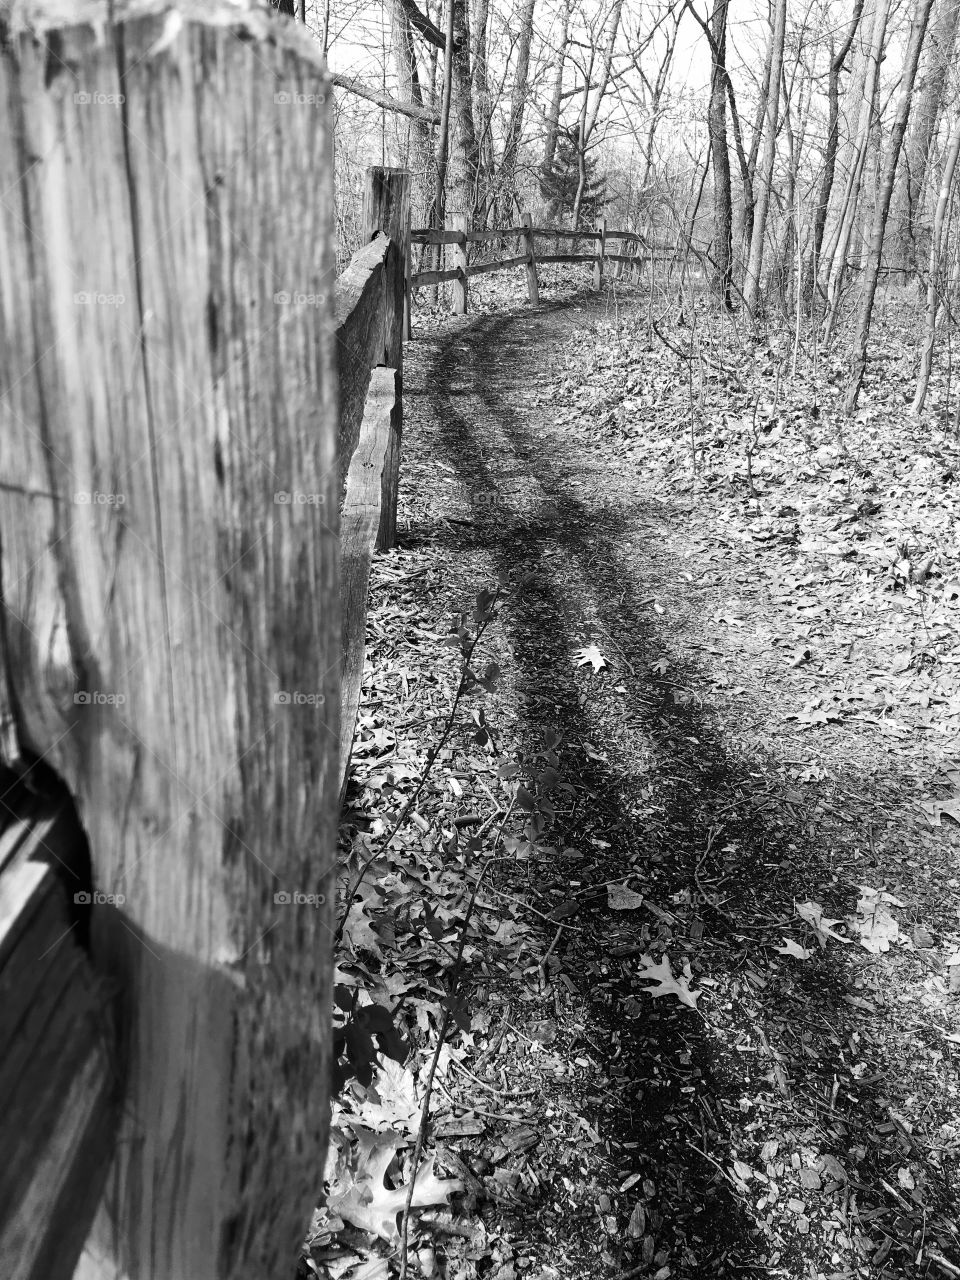 Fenced path